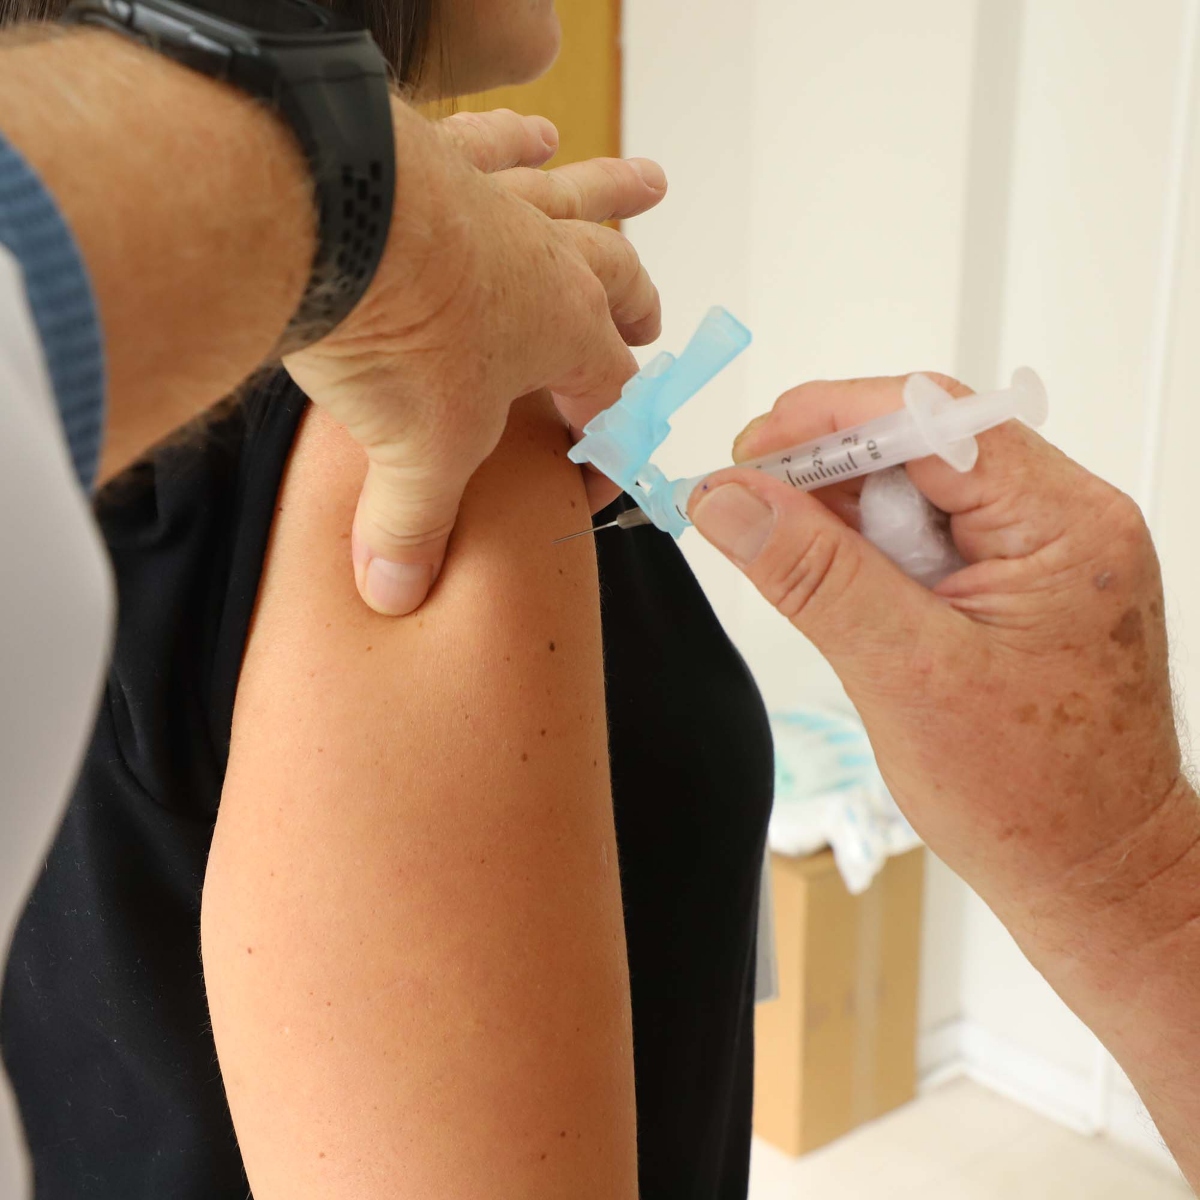  vacinas Paraná 